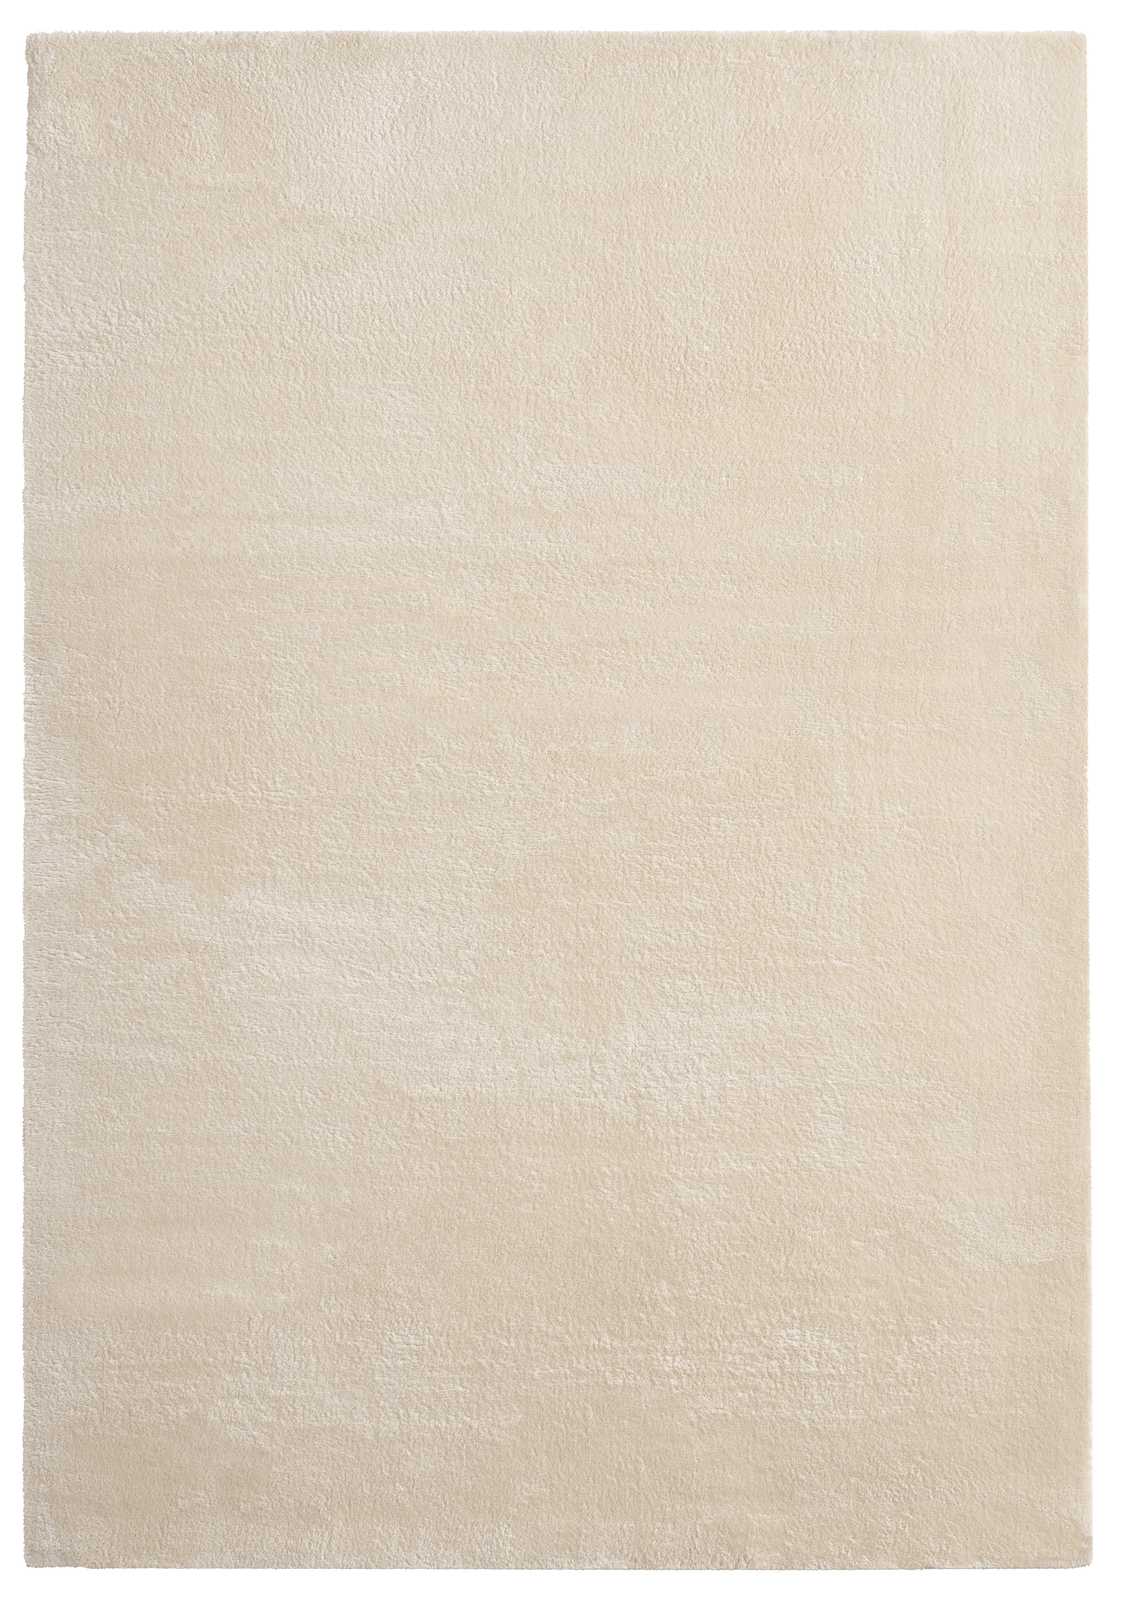             Tapis moelleux à poils longs beige - 170 x 120 cm
        